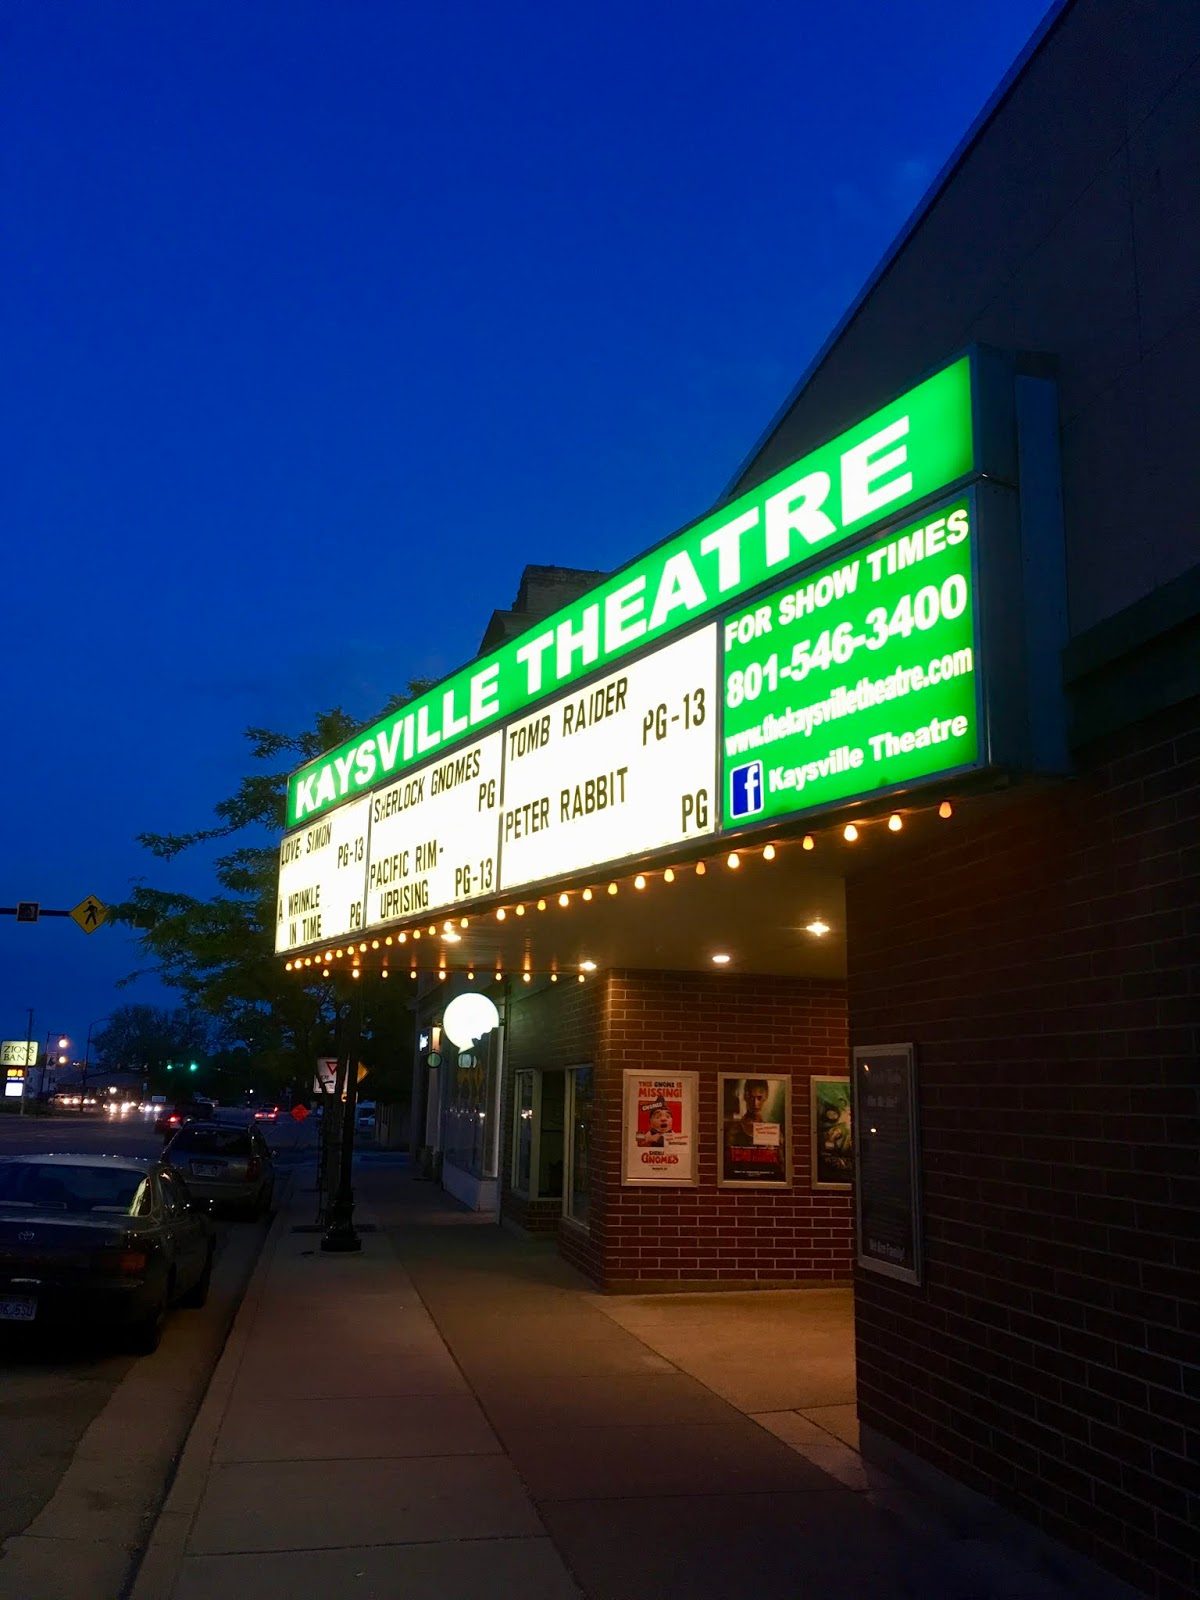 Kaysville Dollar Theater Movie Times